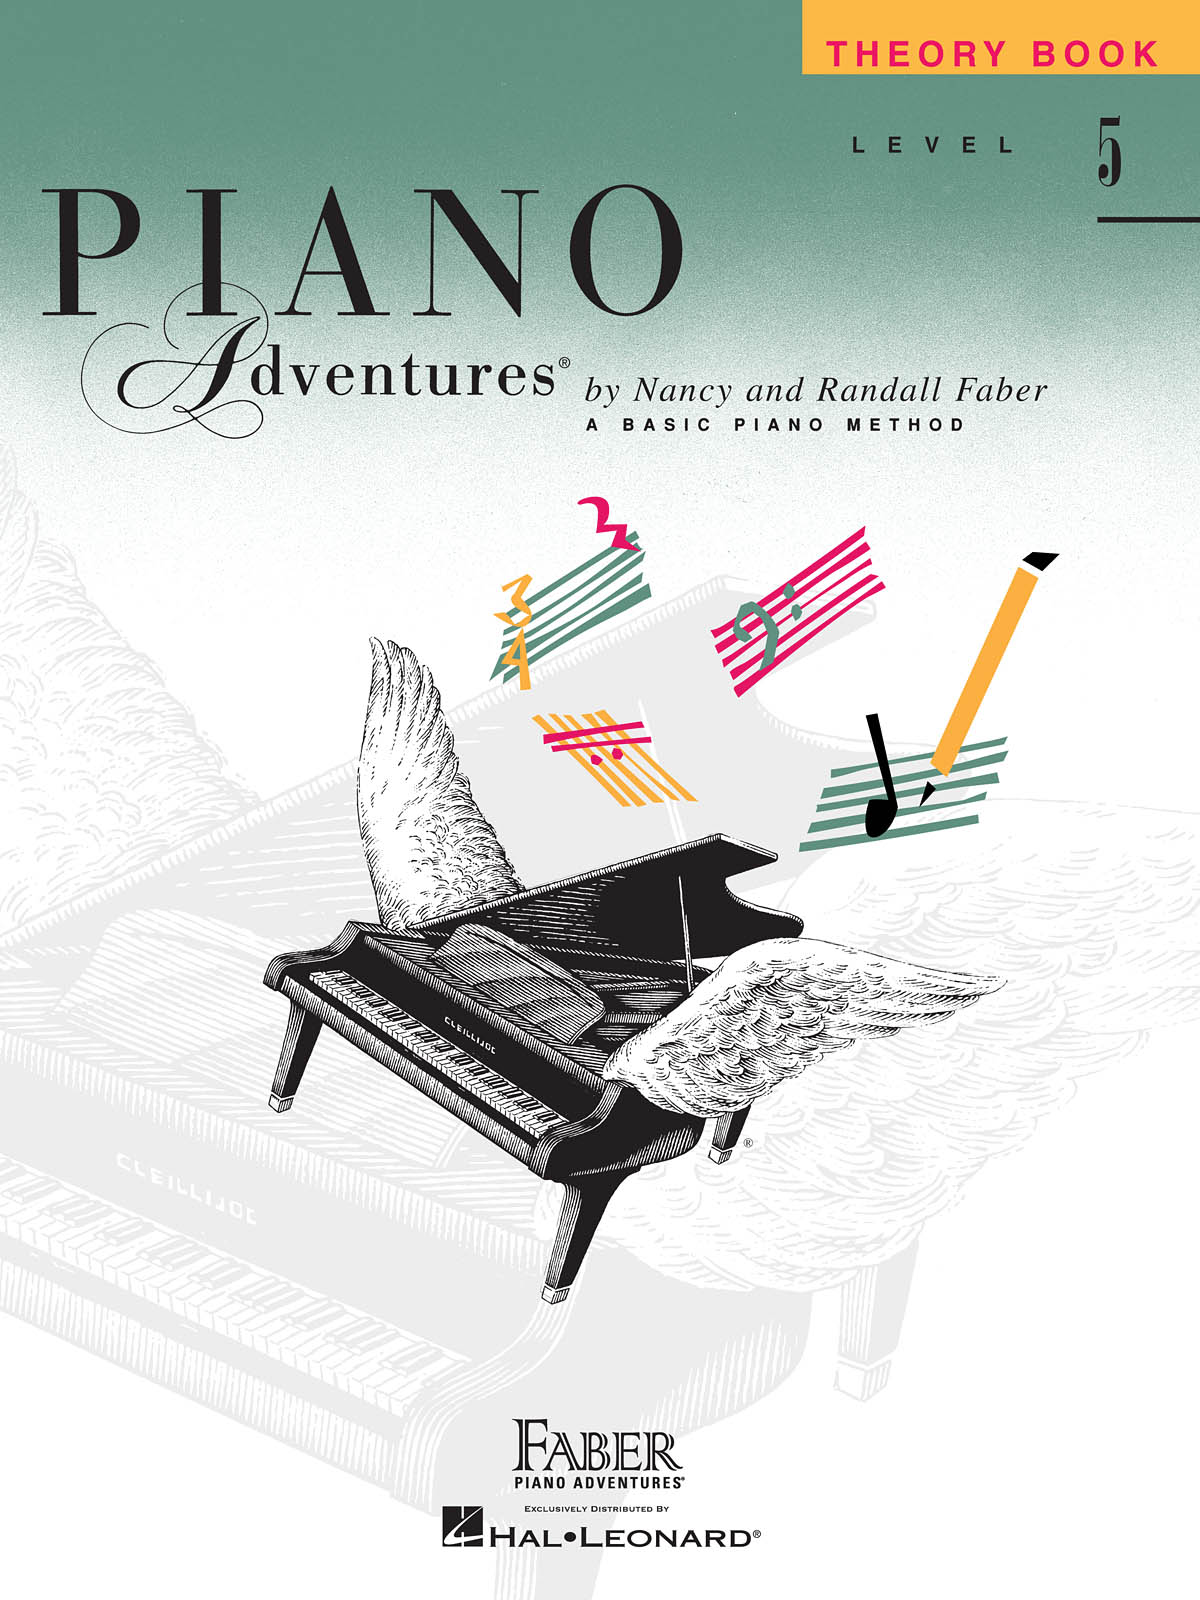 Piano Adventures Level 5 - Theory Book učebnice pro klavír